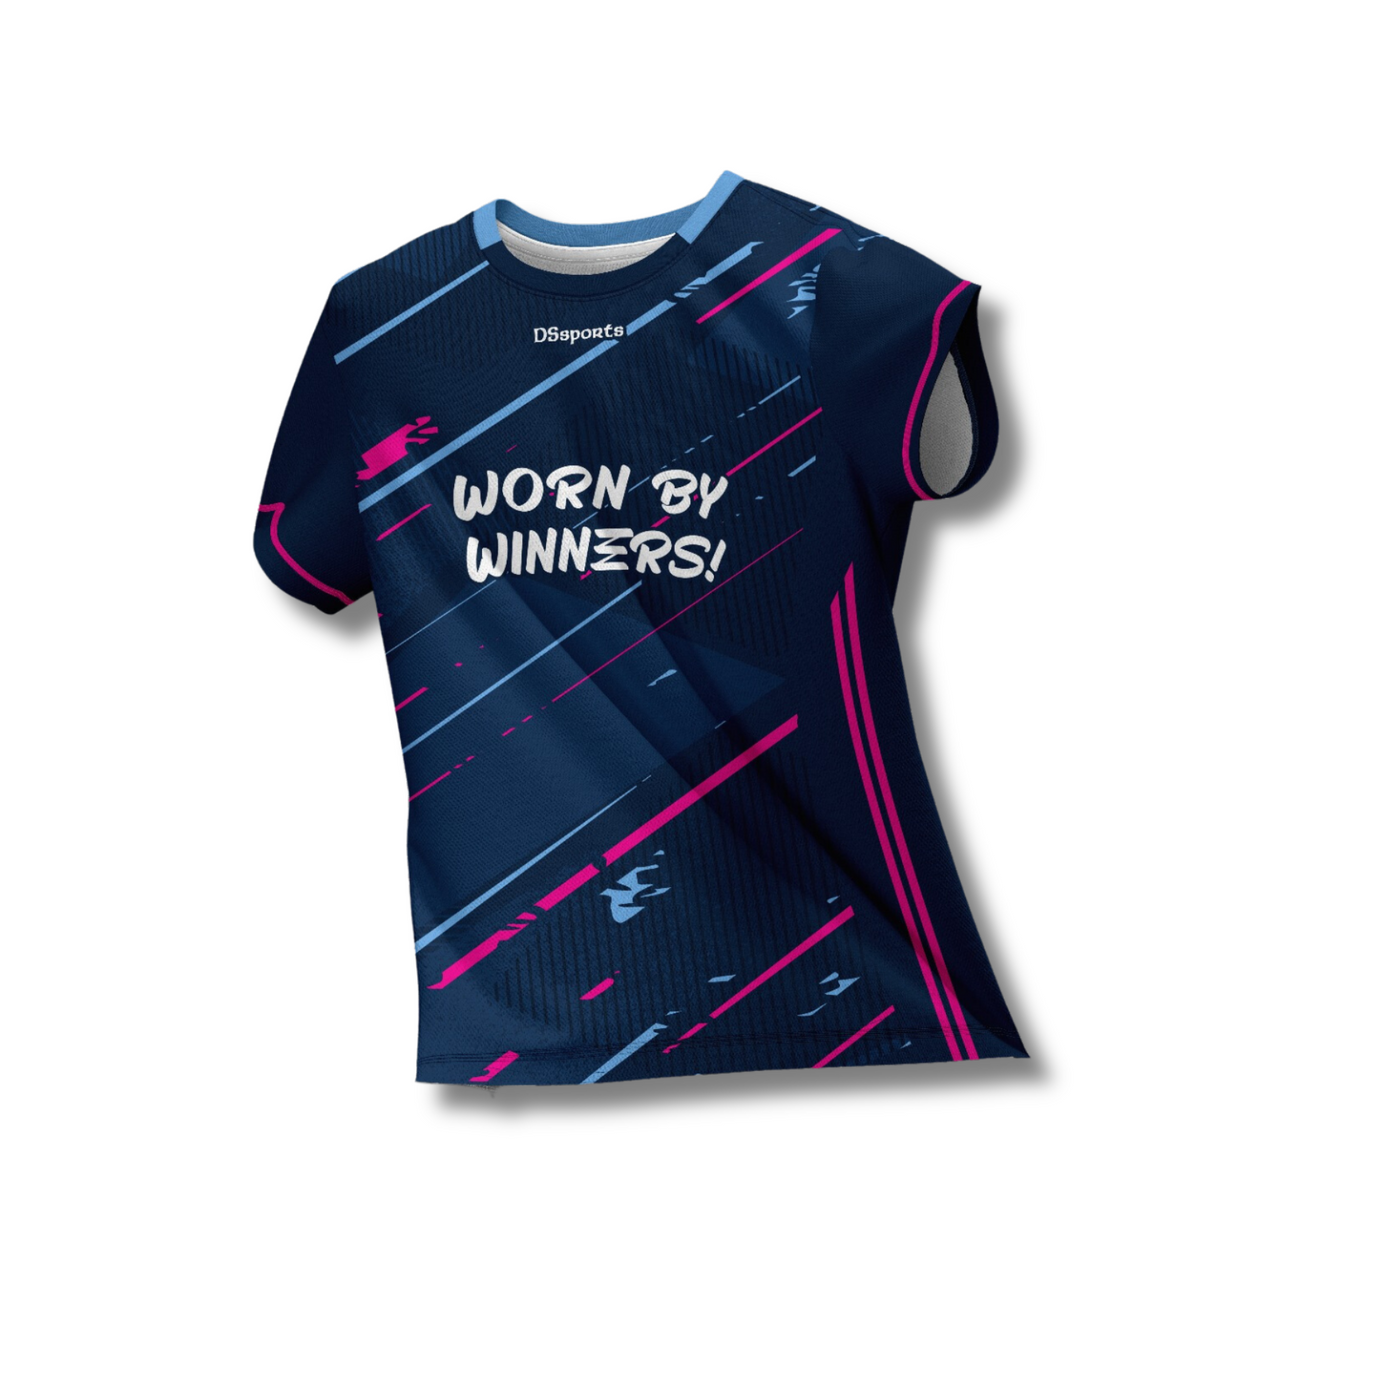 Worn by winners Jersey - Pink/Blue